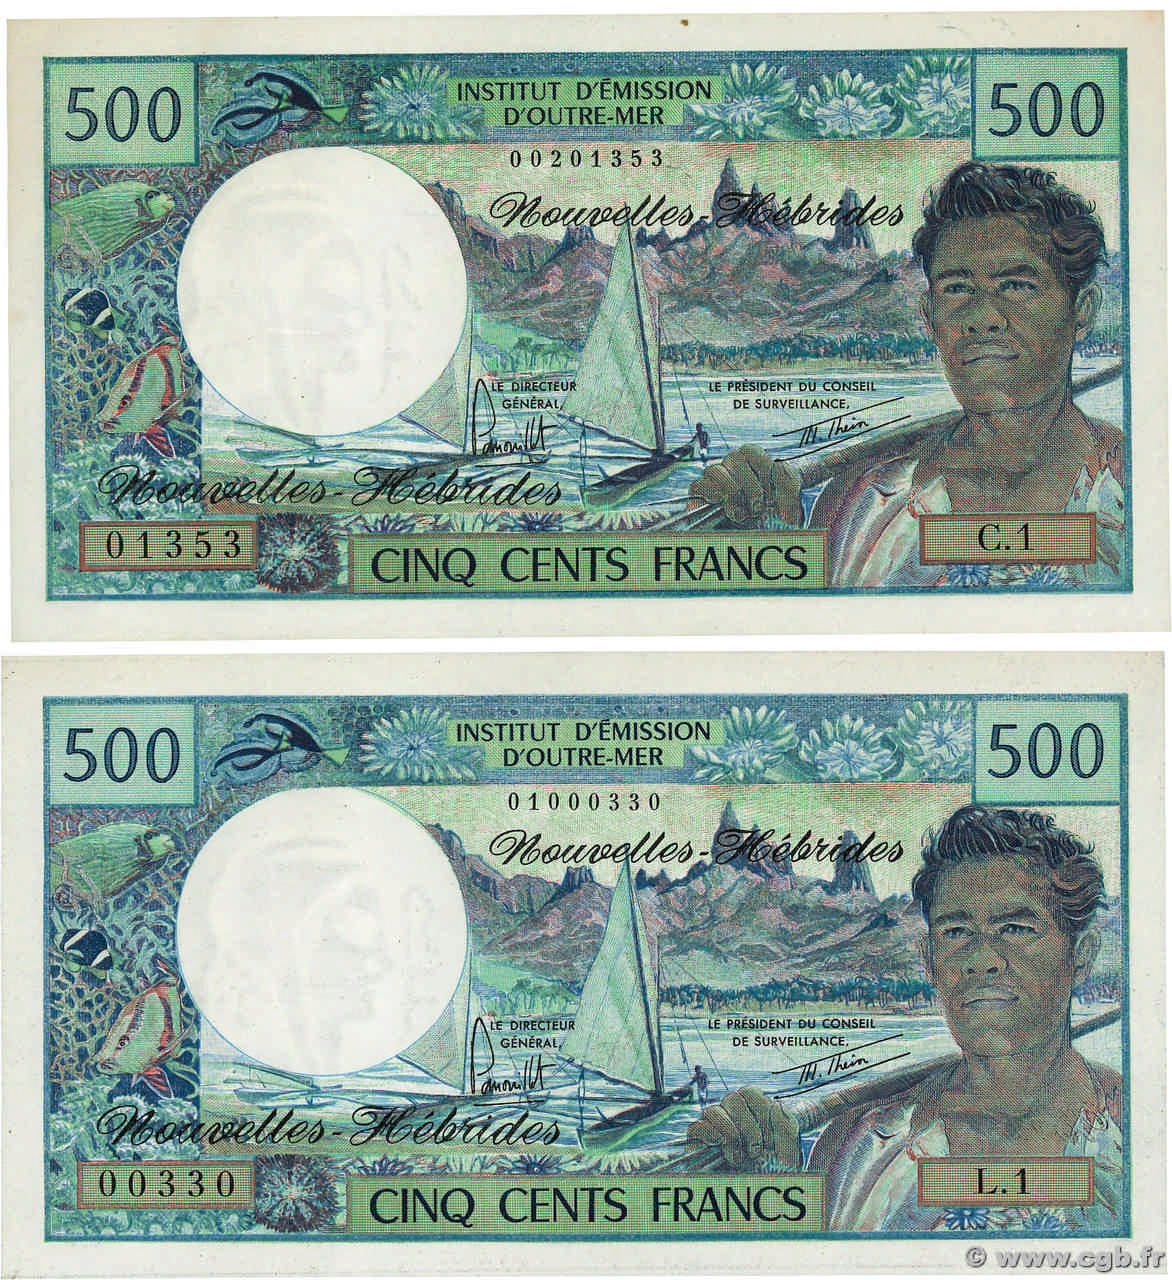 500 Francs Lot NEW HEBRIDES  1979 P.19b UNC-